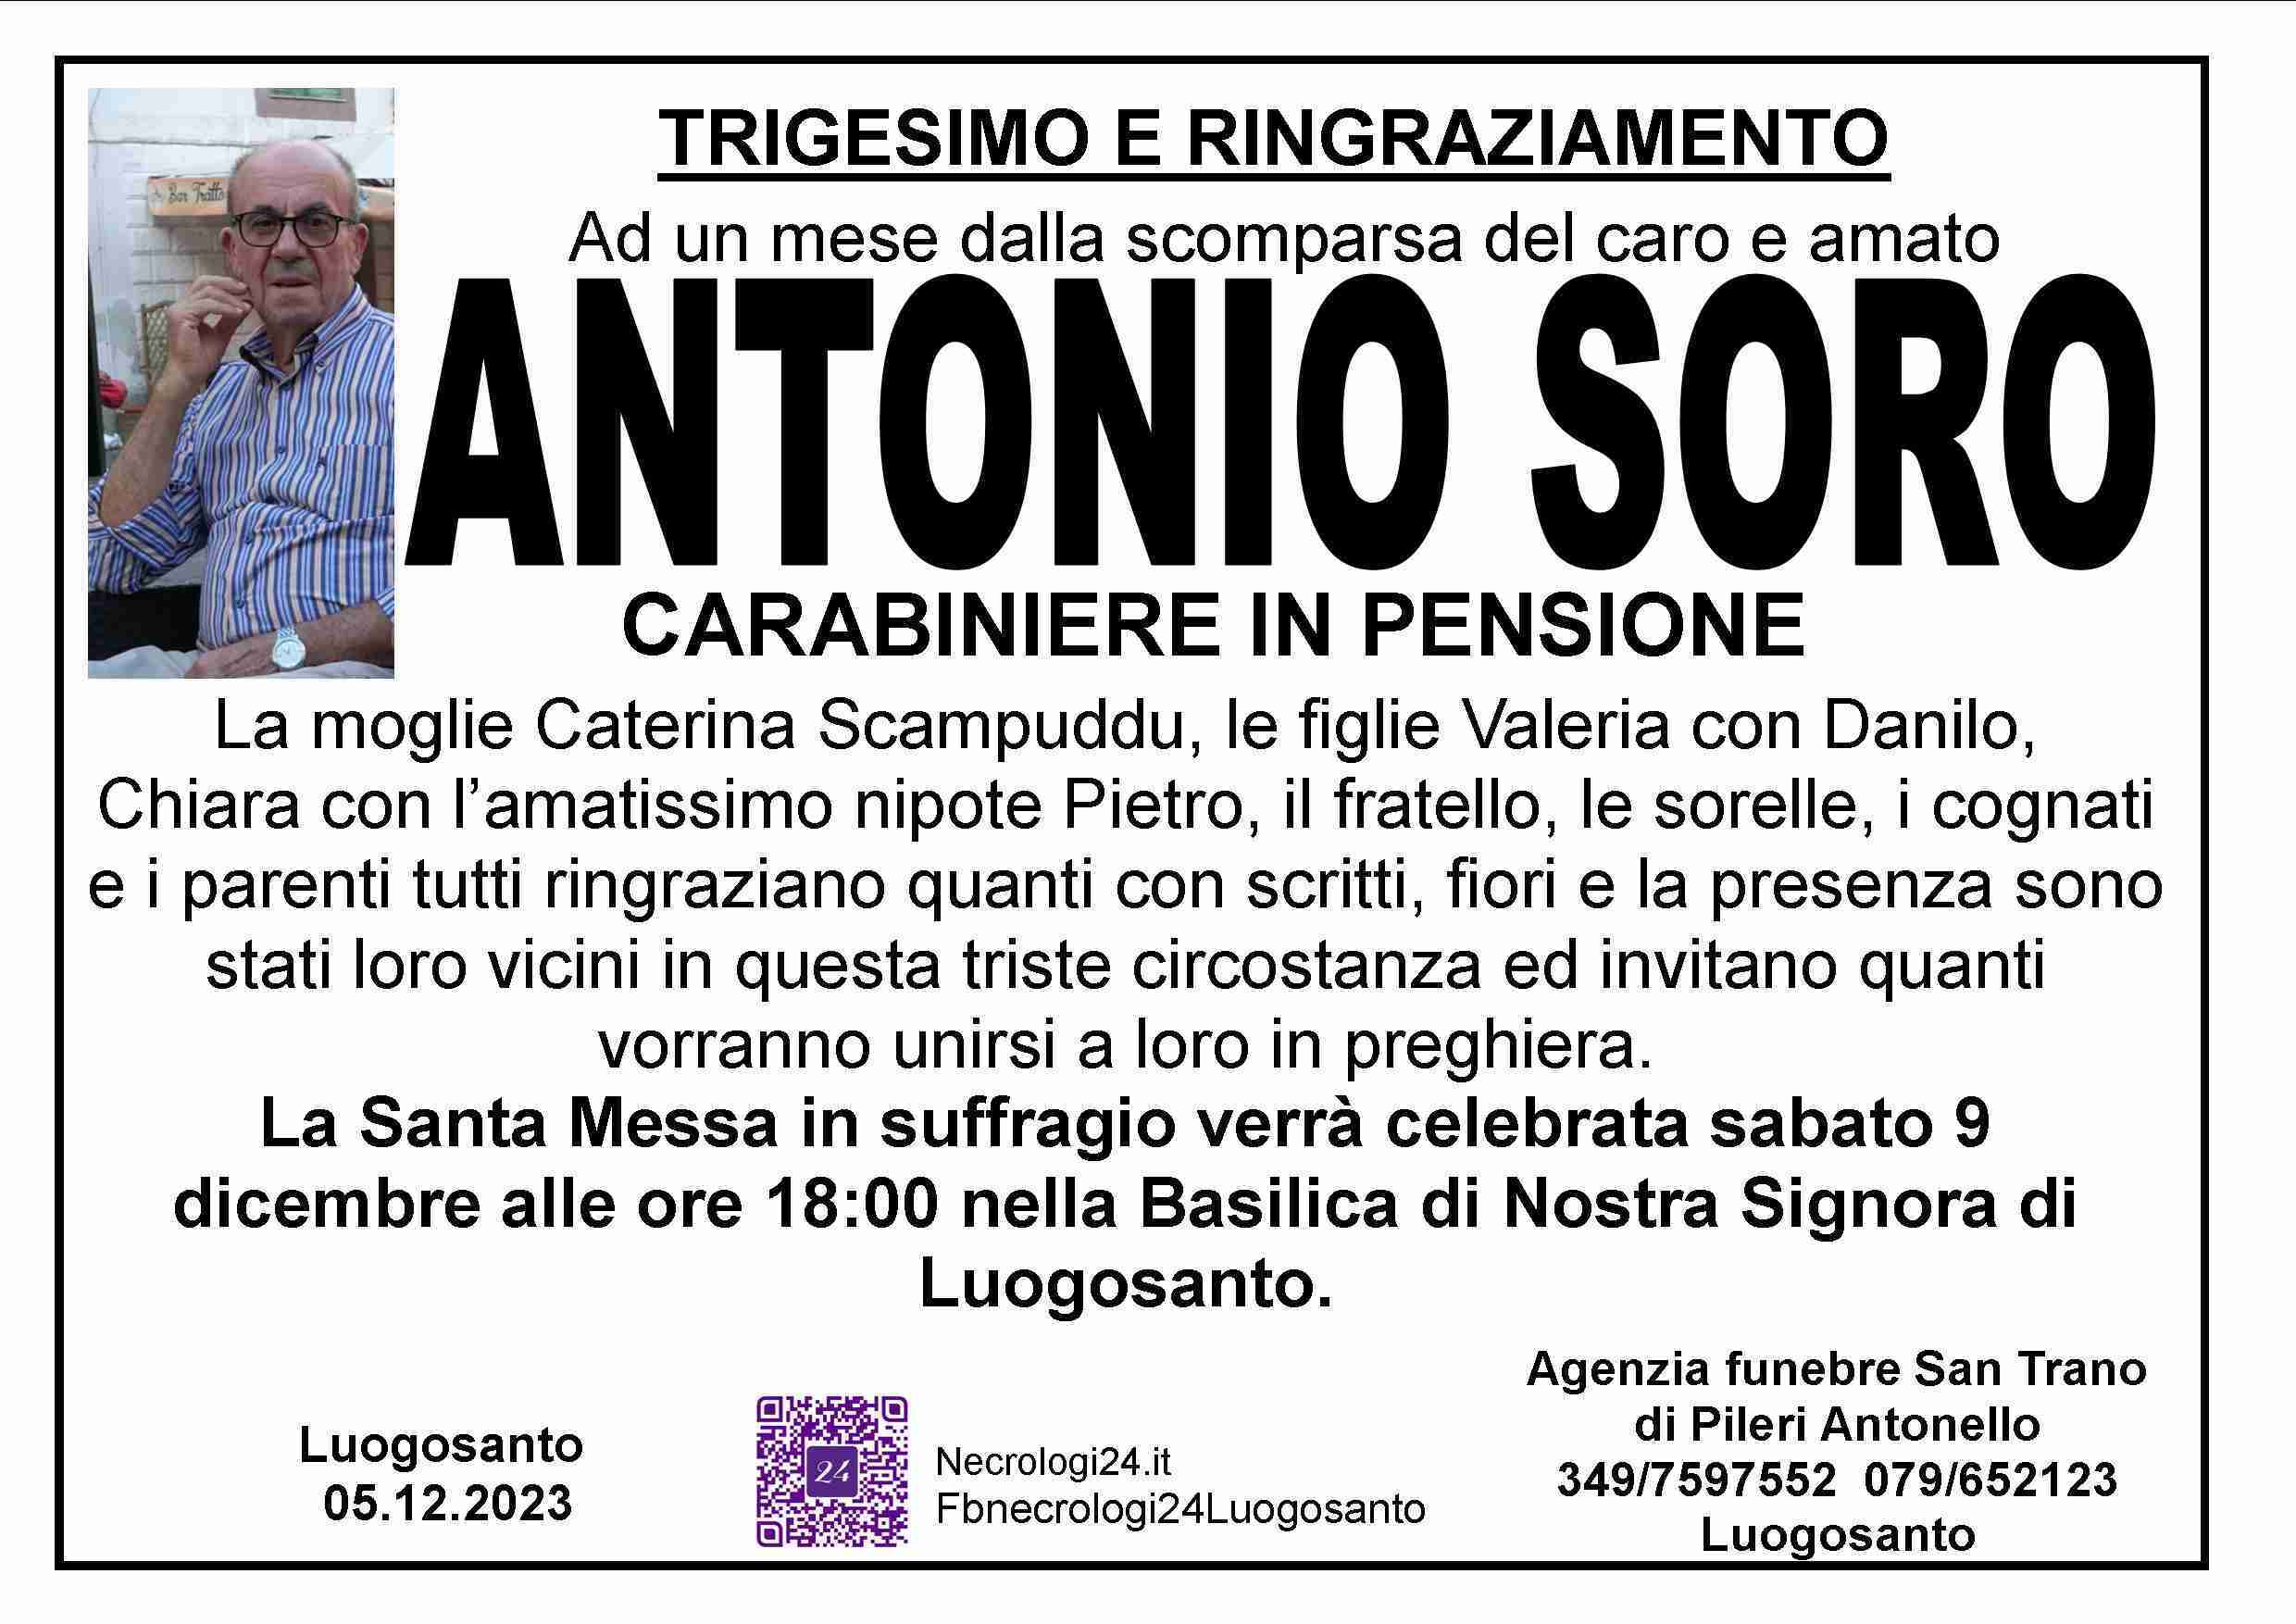 Antonio Soro